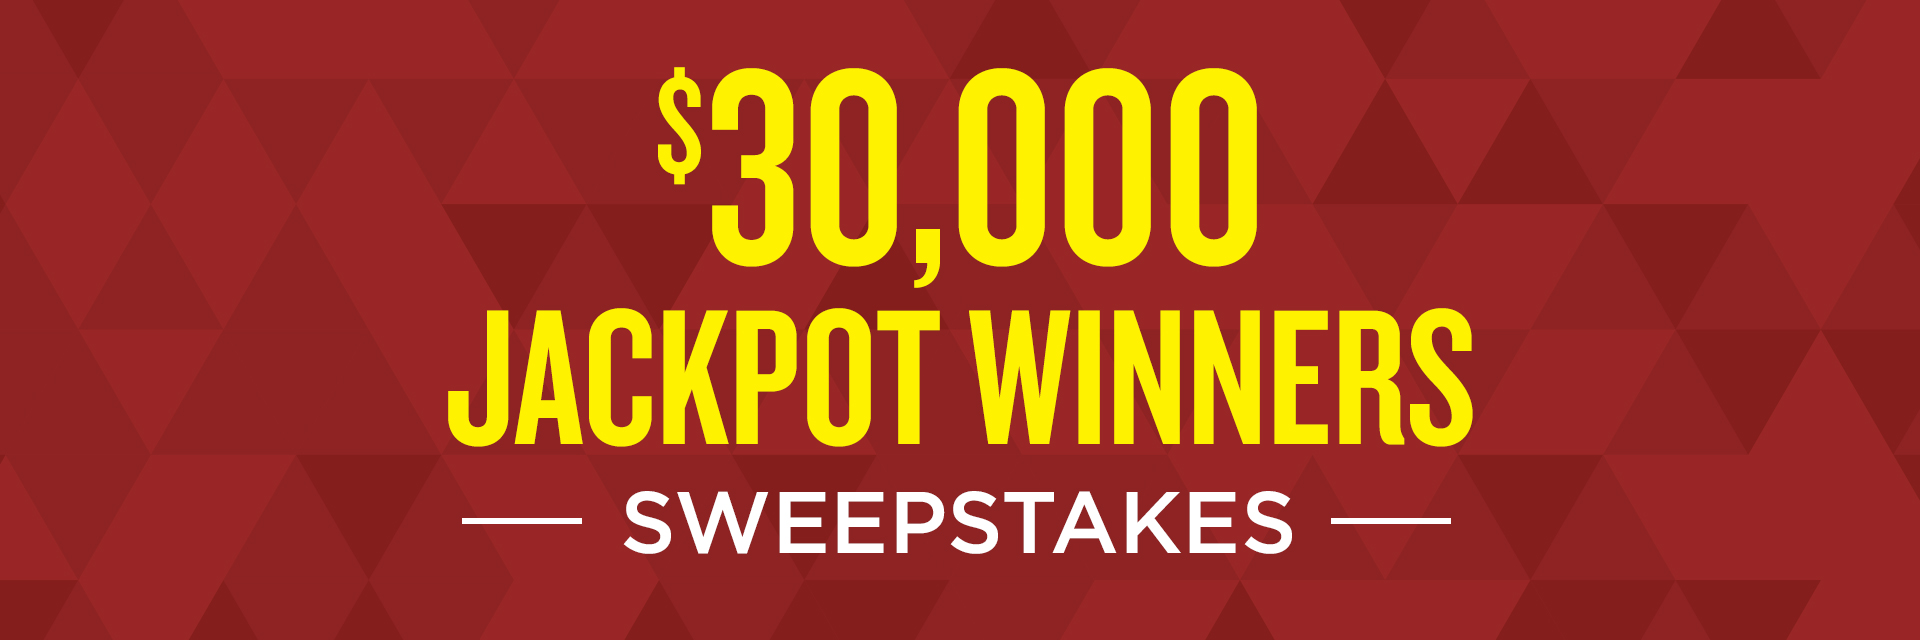 $30,000 Jackpot Winners Sweepstakes